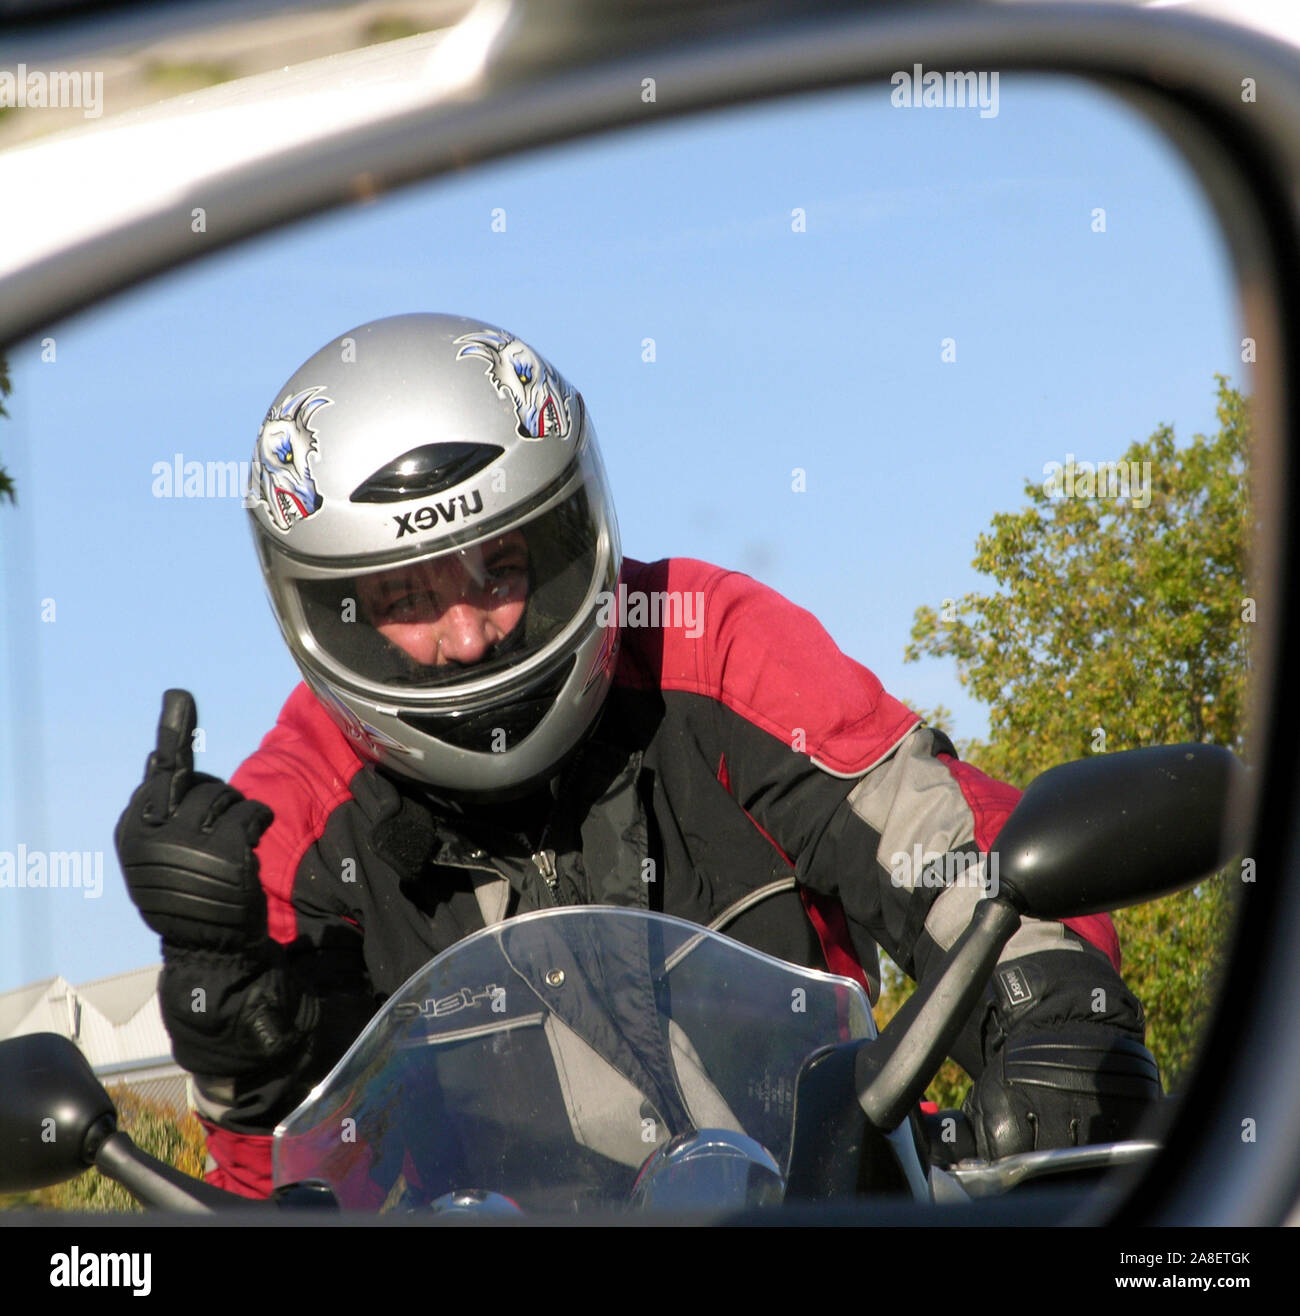 Verärgerter Motorradfahrer zeigt den Mittelfinger, Autofahrer sieht das im Spiegel sciabiche Autos Foto Stock